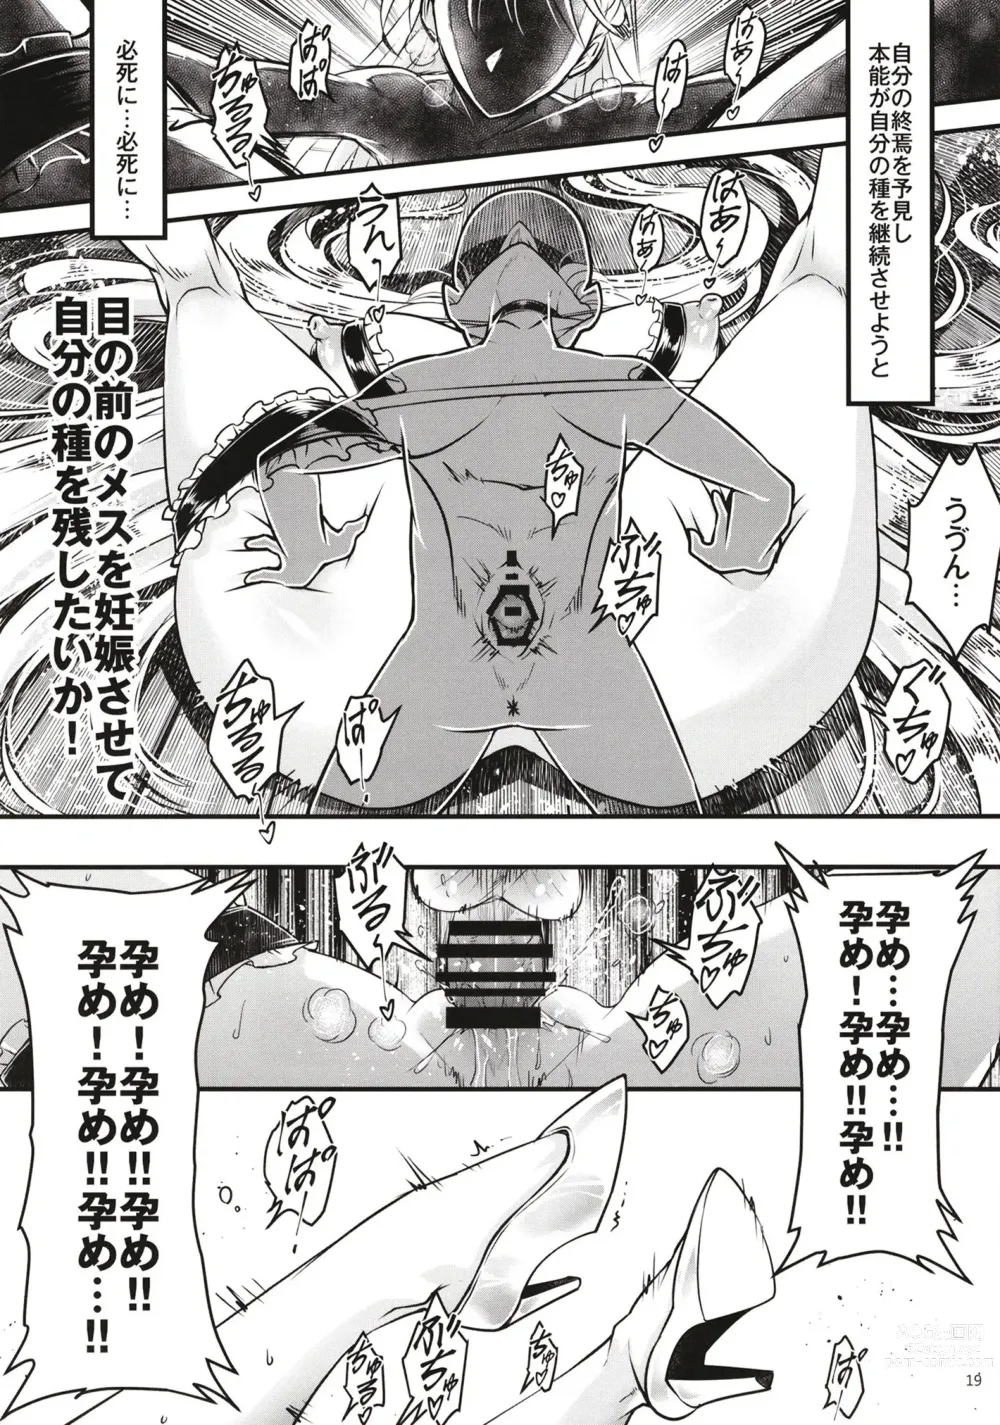 Page 20 of doujinshi Hyakkasou 11 Idatsu Ijitsu Gaiden